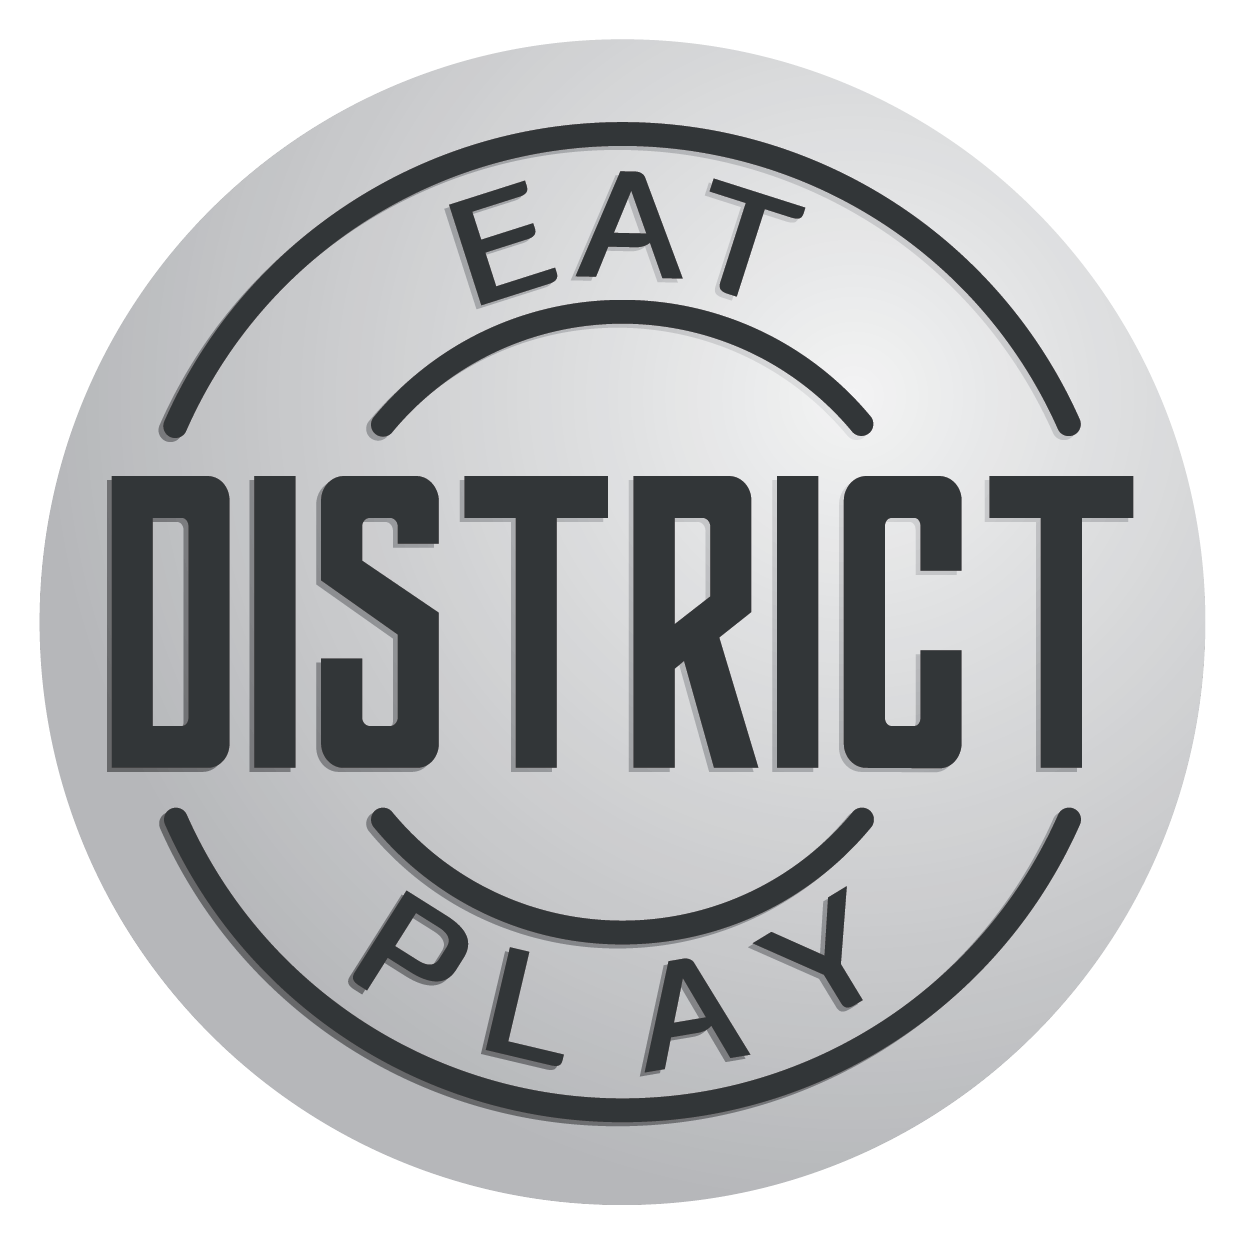 District Eat & Play Salina